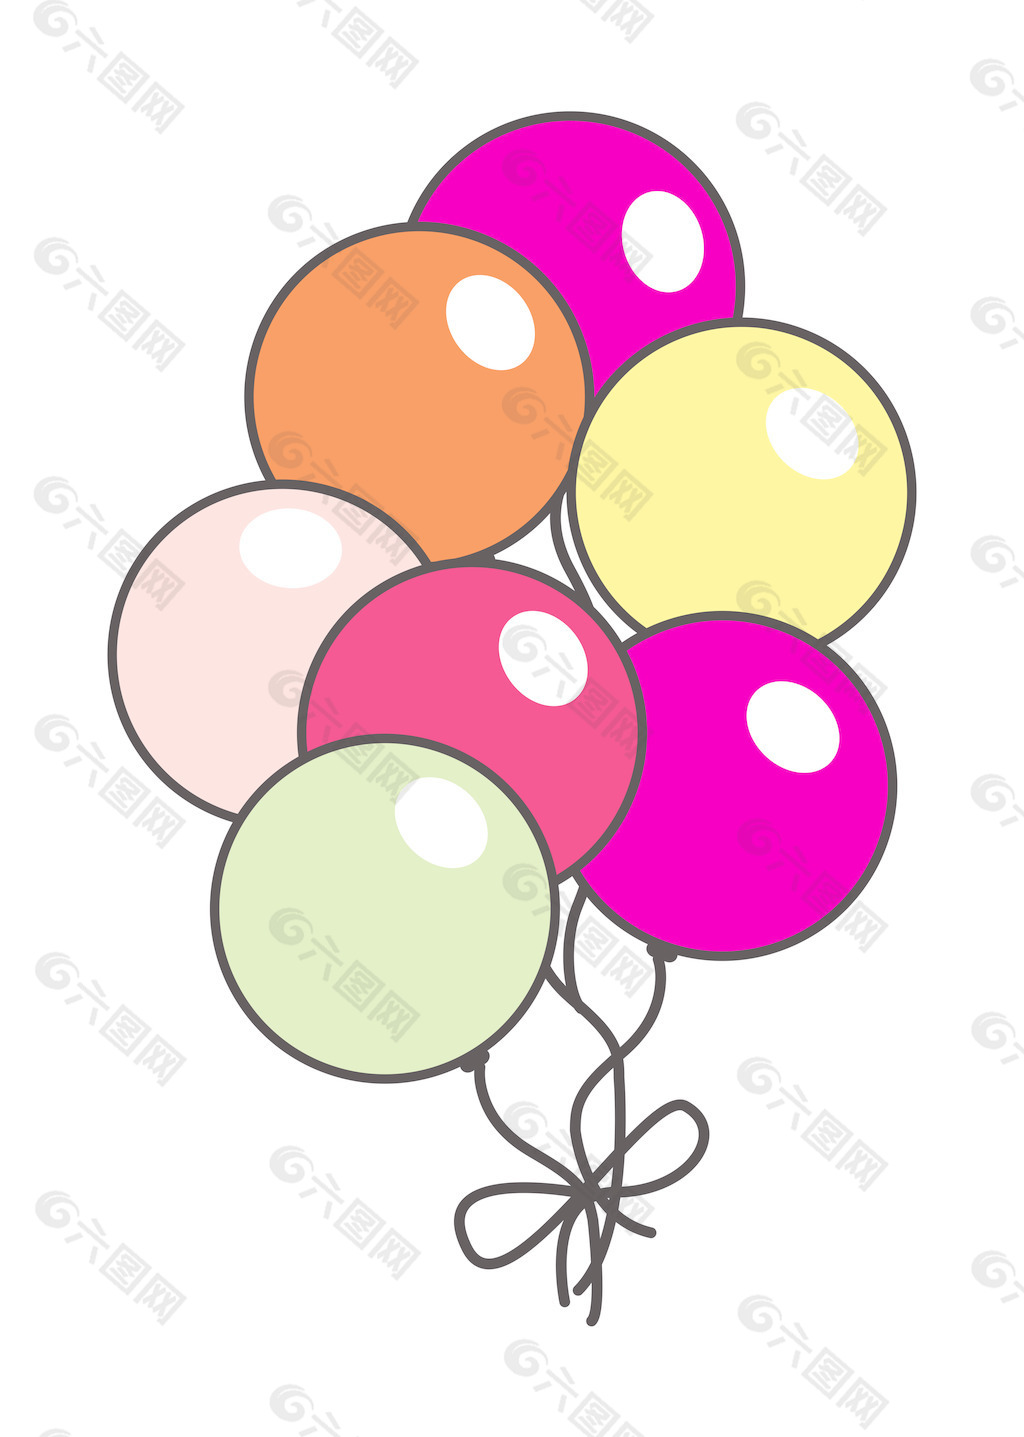 老式的彩色气球束矢量